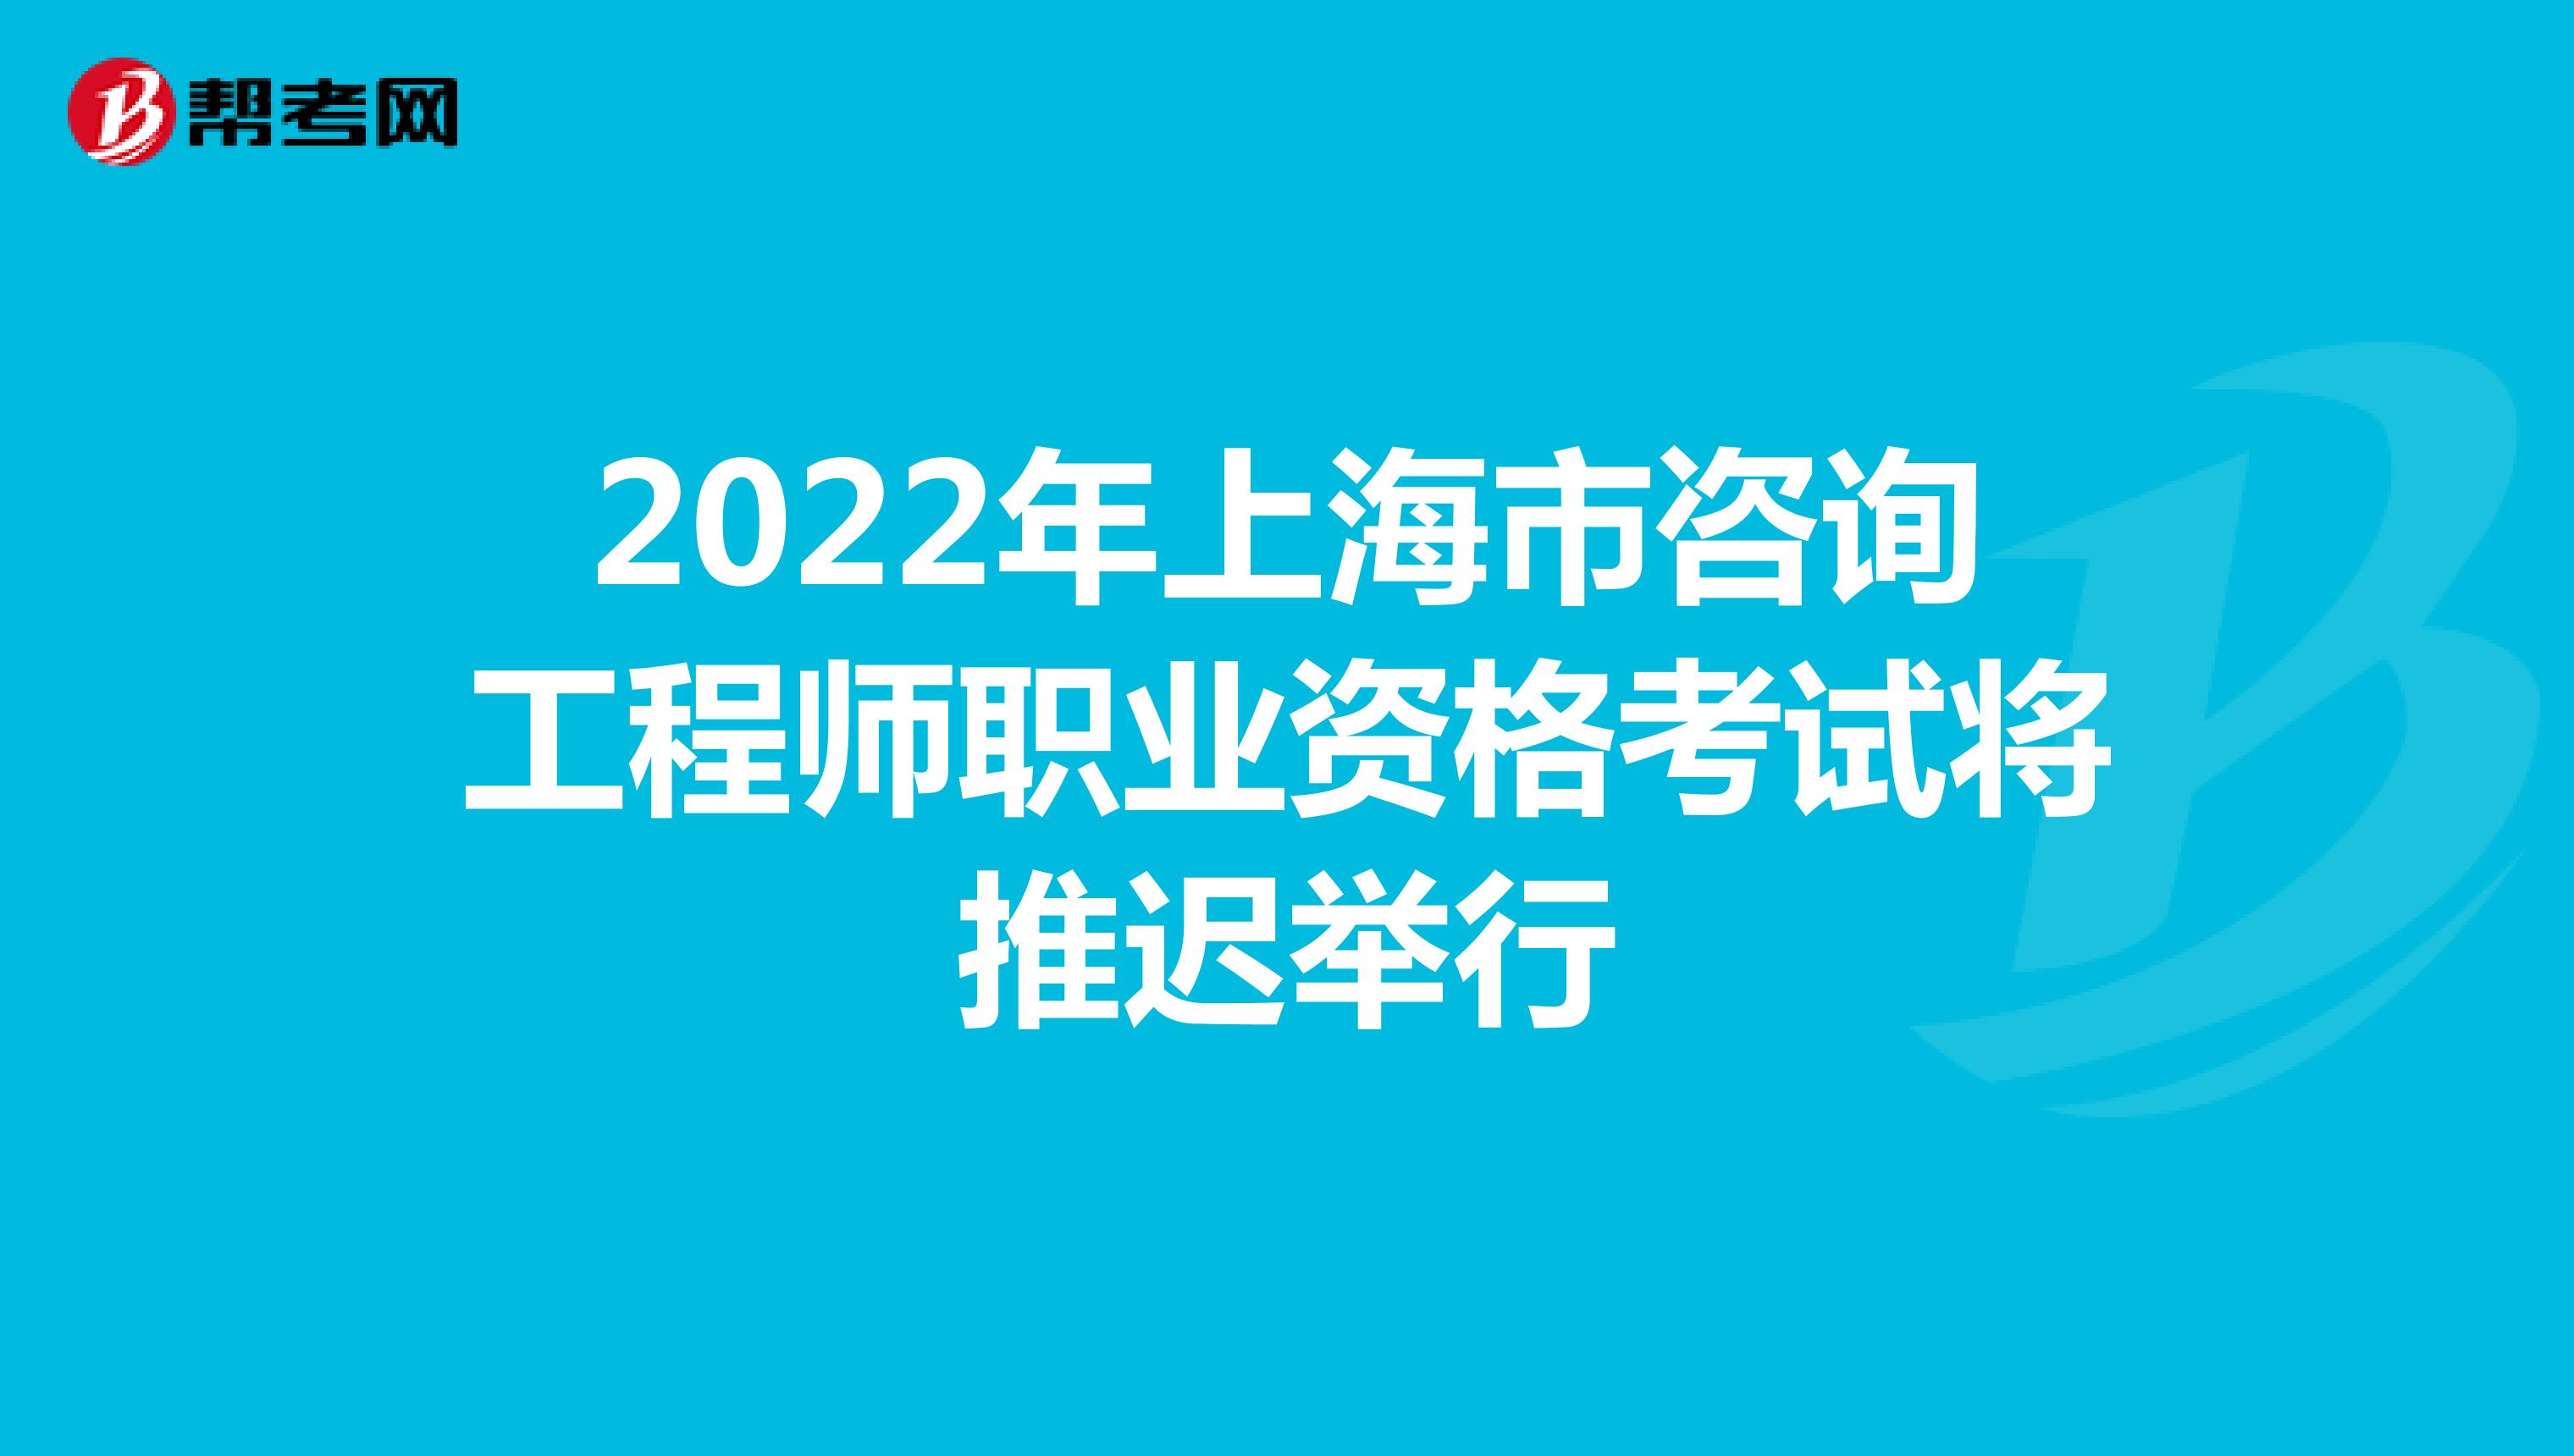 2022年上海市咨询工程师职业资格考试将推迟举行